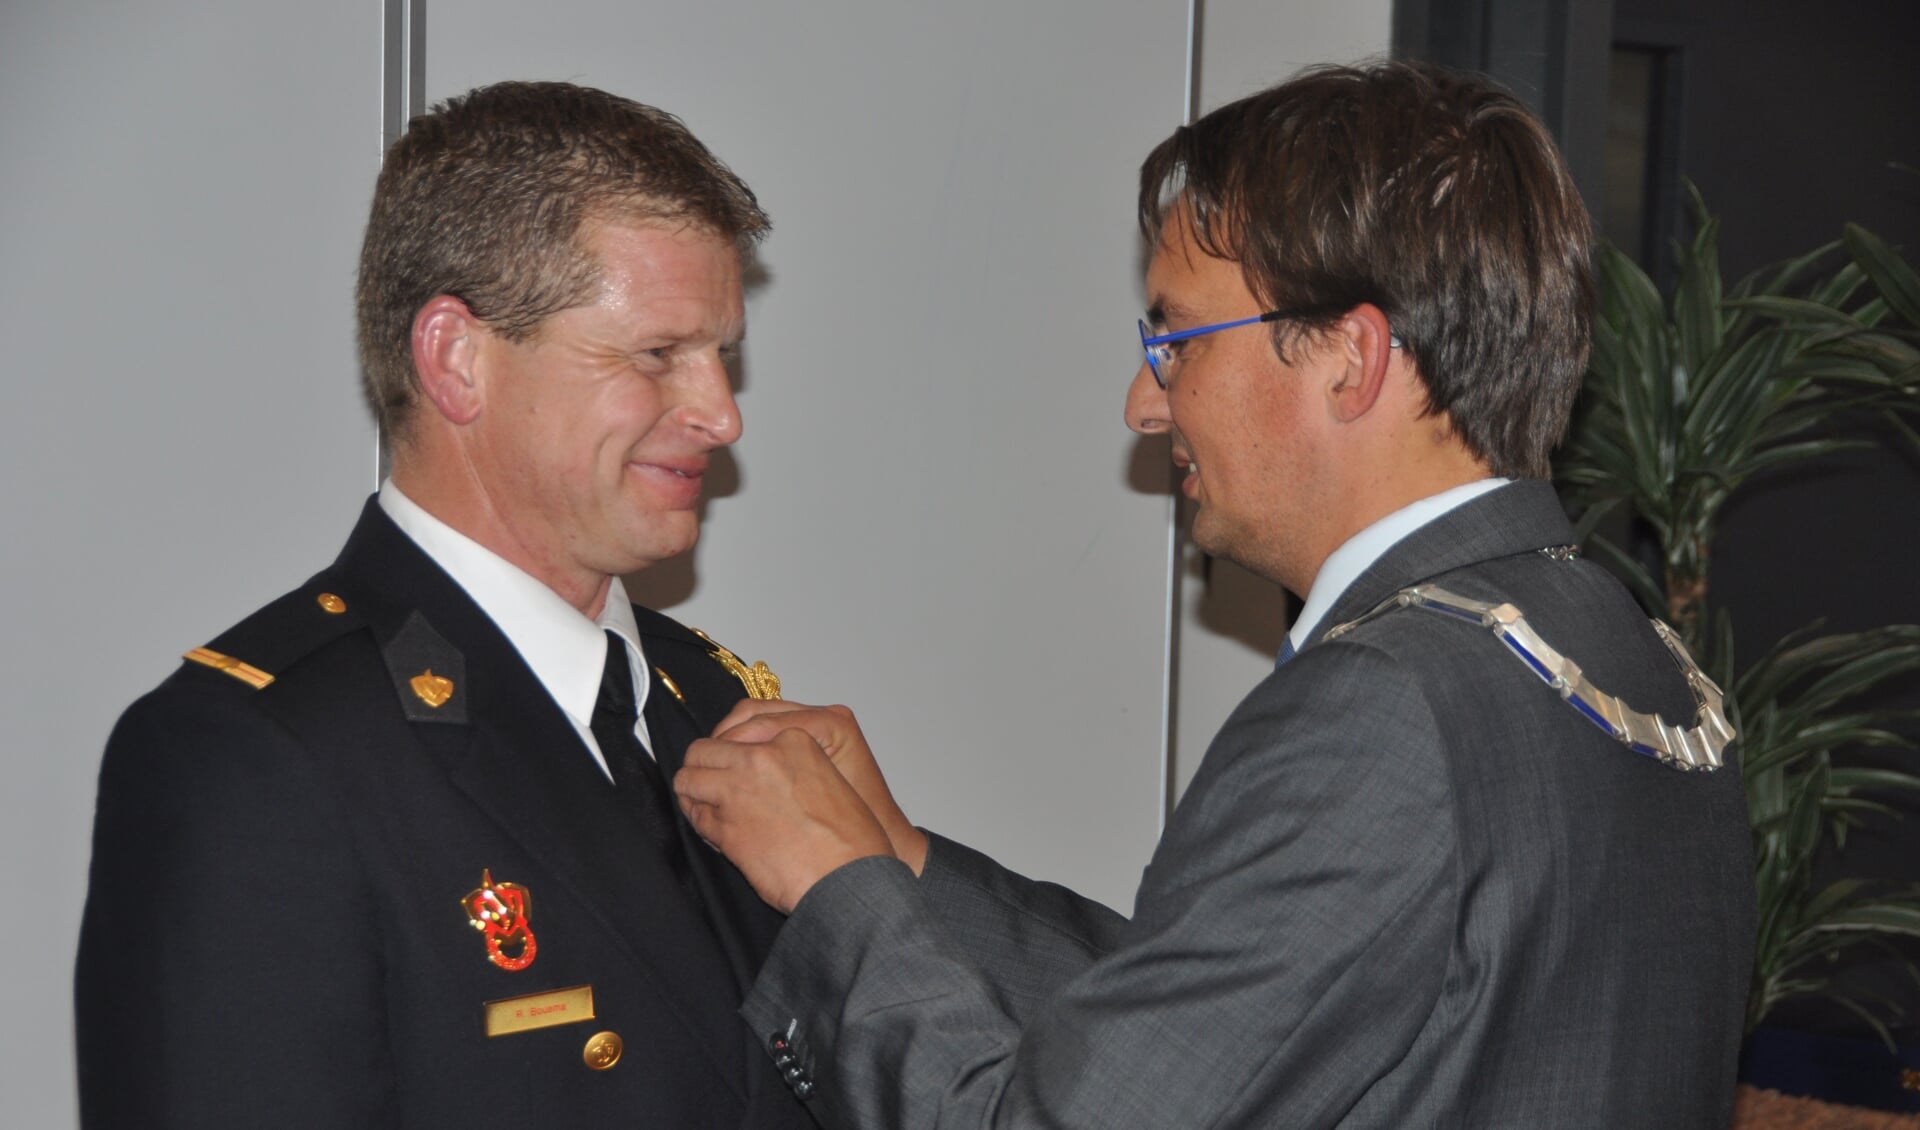 Richard Bousma wordt onderscheiden tot Lid in de Orde van Oranje Nassau.